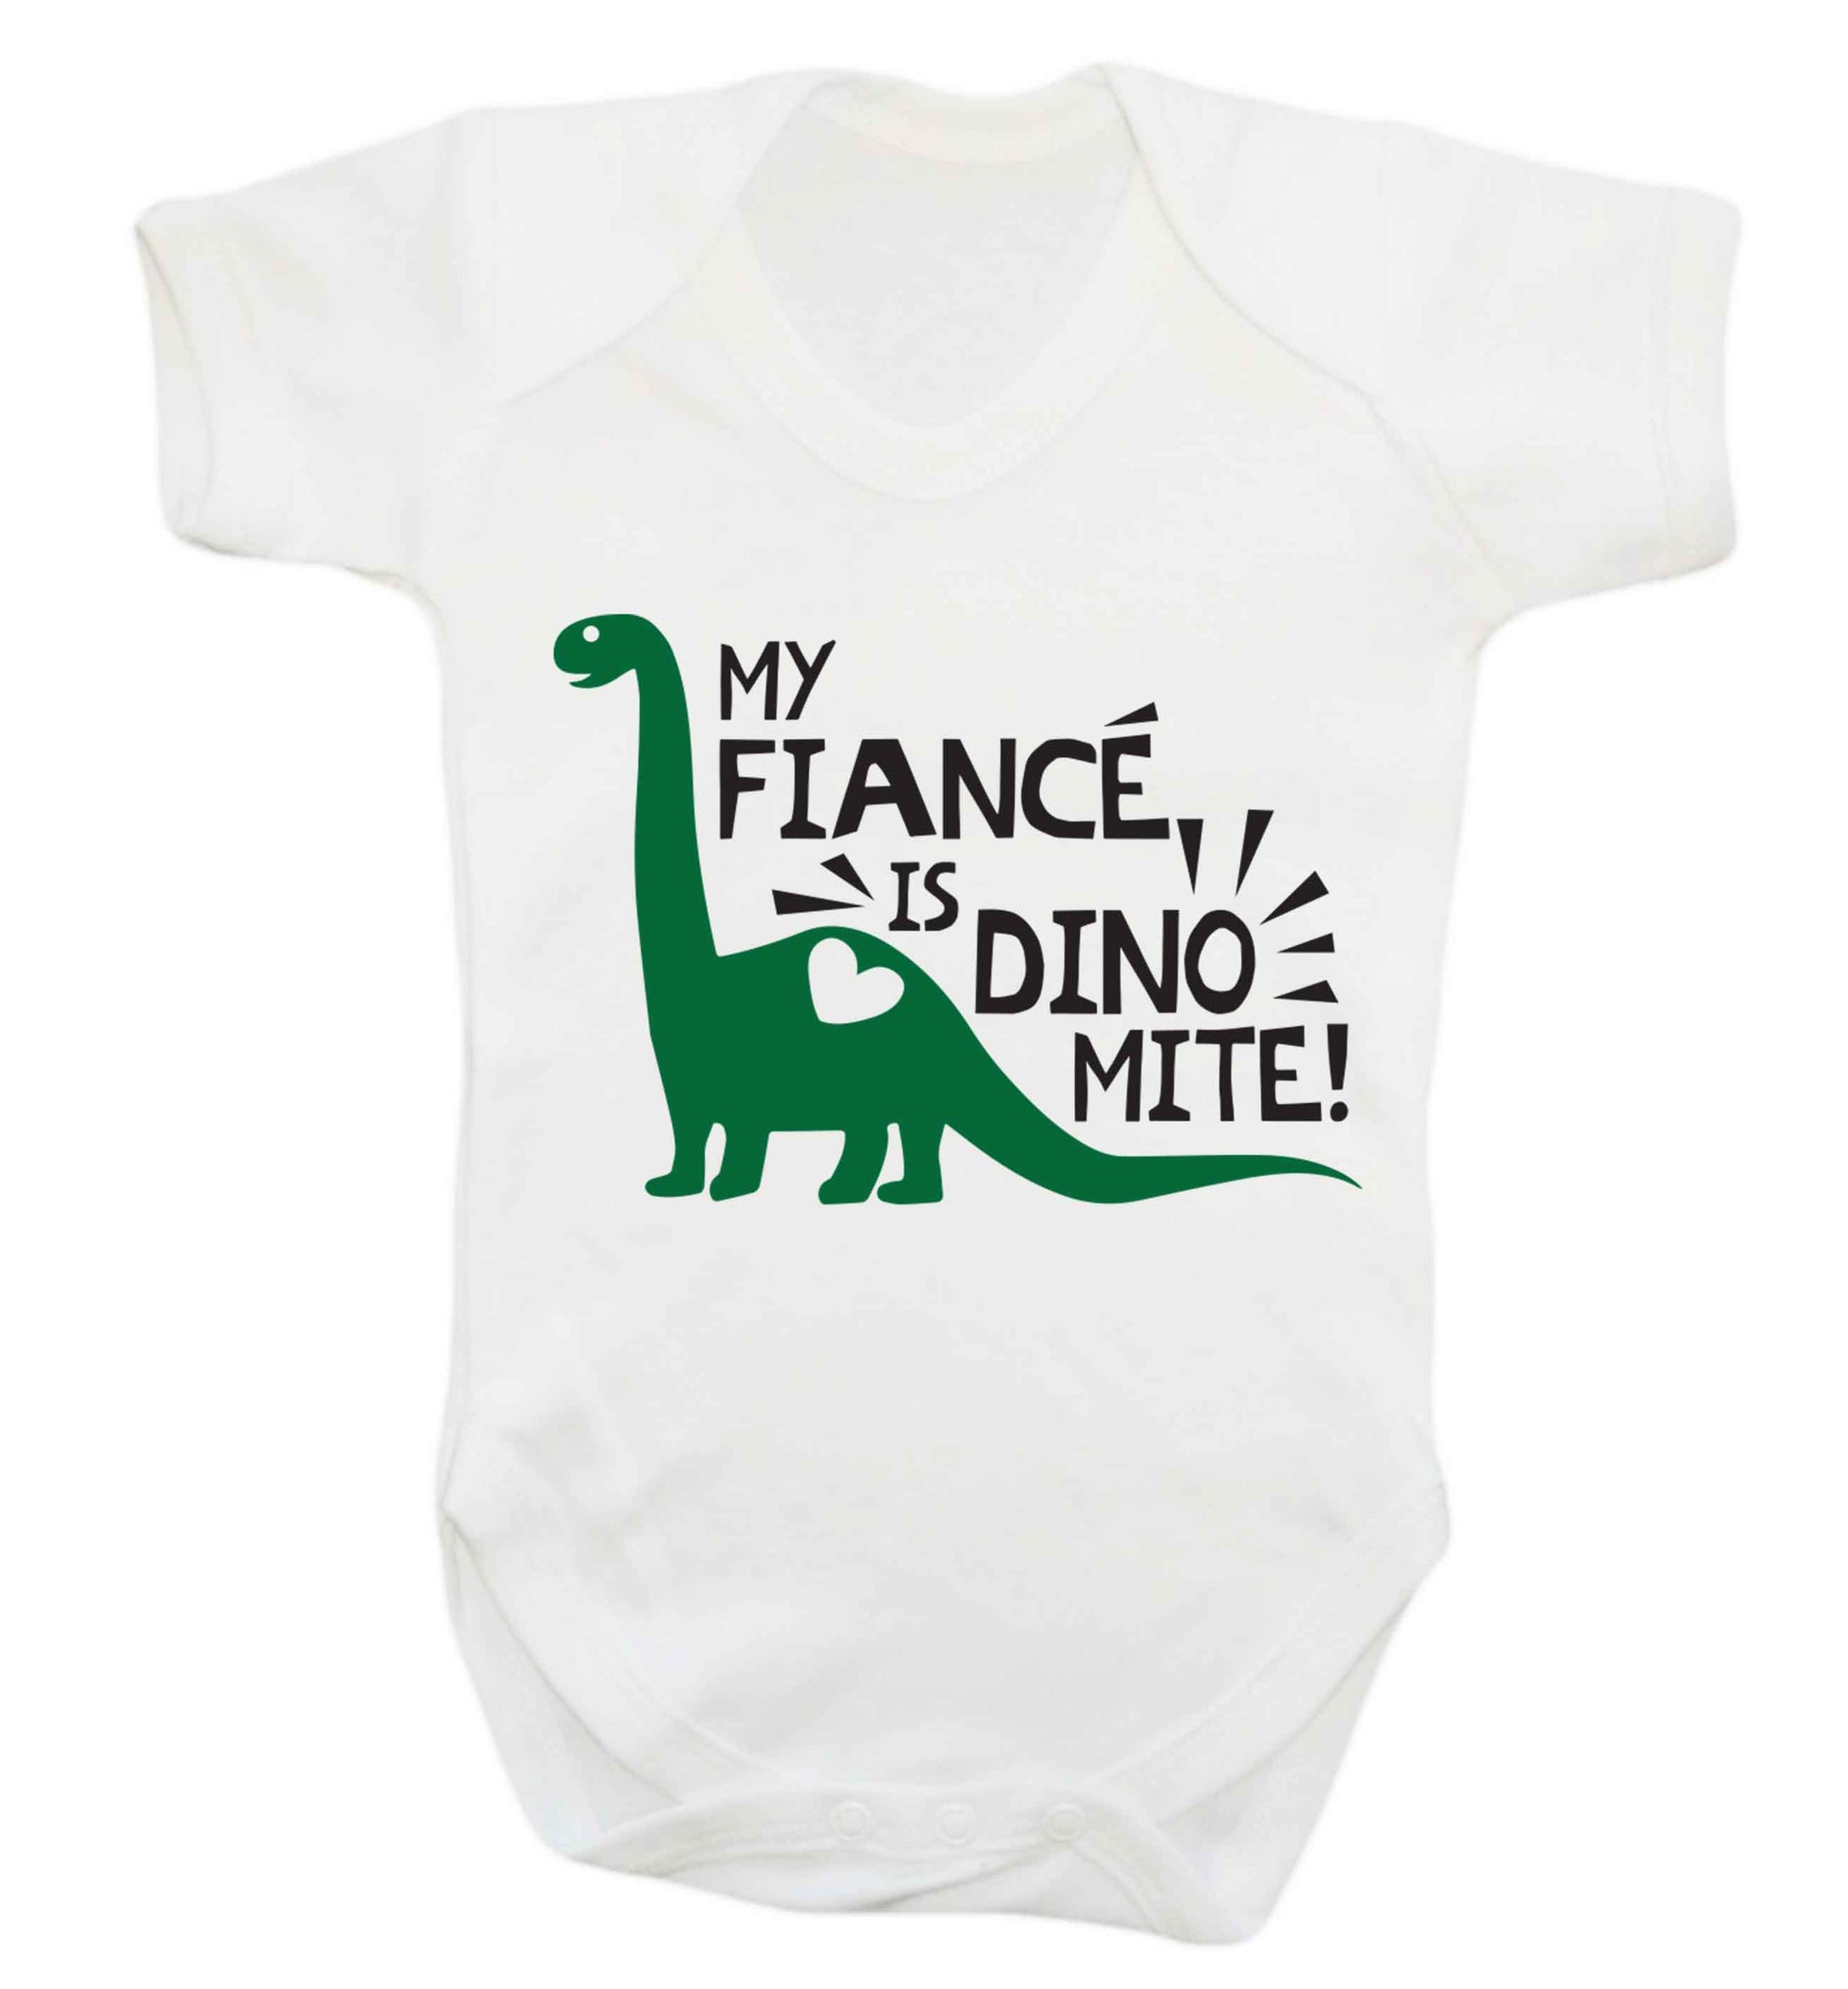 My fiance is dinomite! Baby Vest white 18-24 months